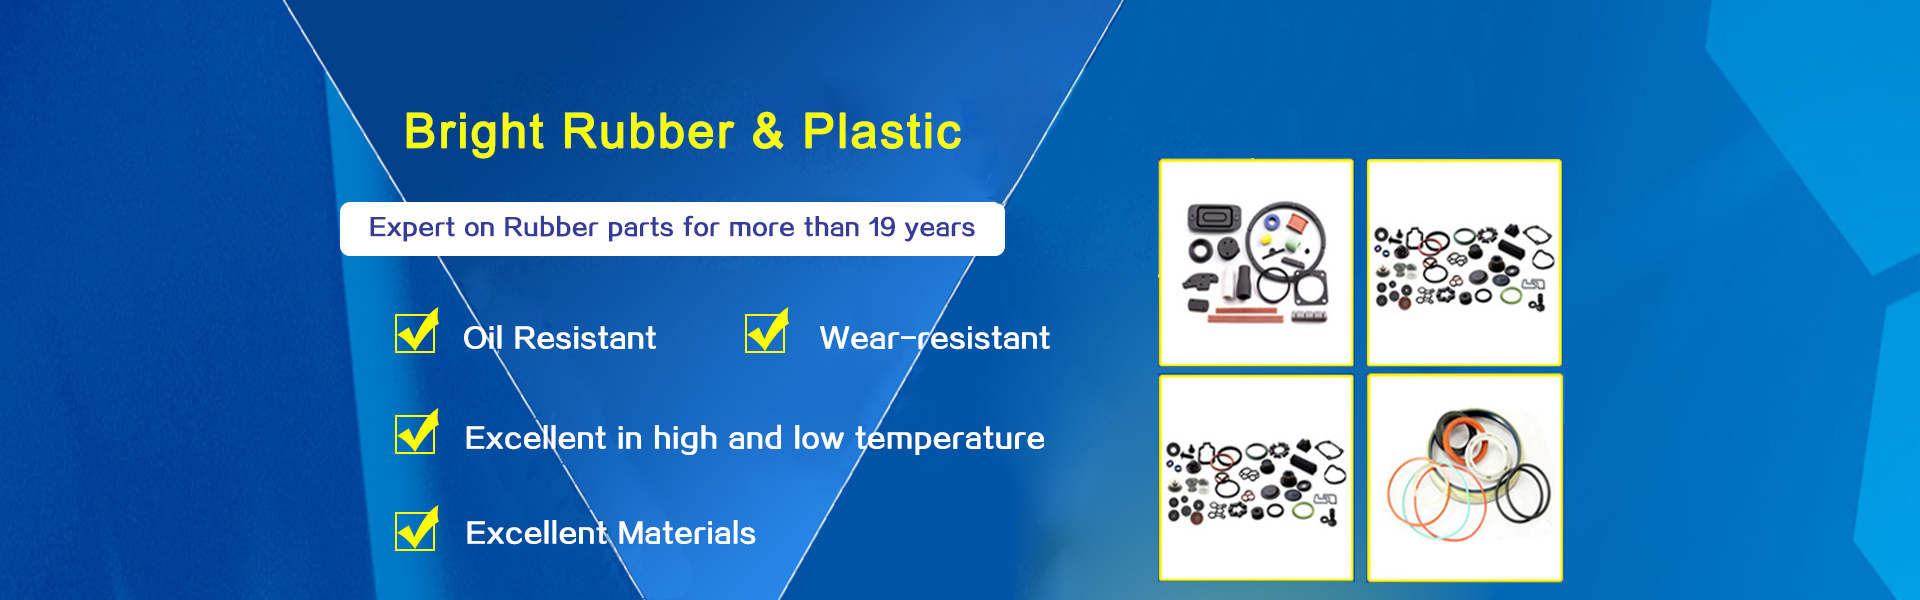 Qingdao Bright Rubber & Plastic Co., Ltd